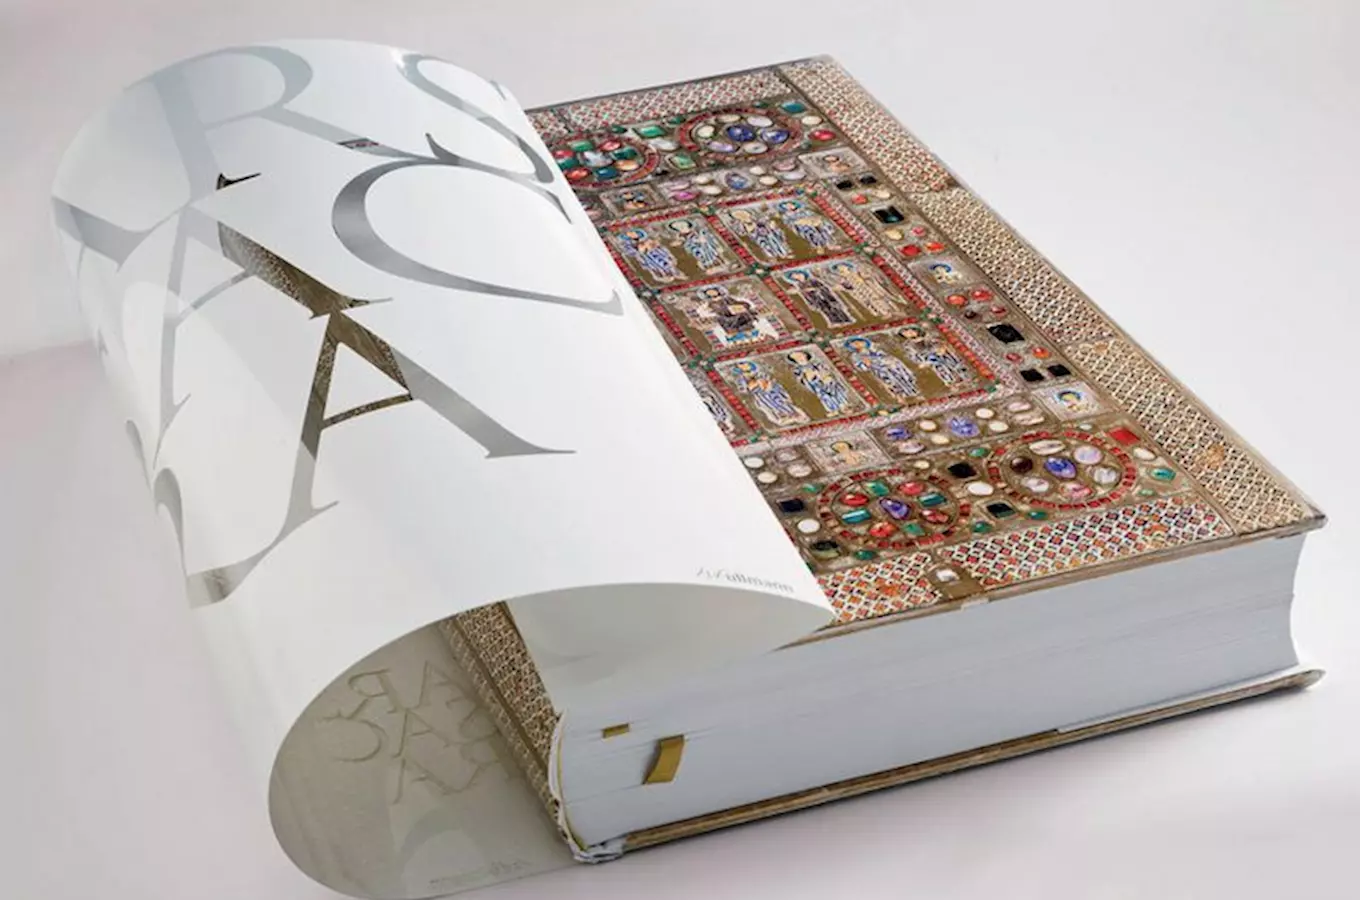 Jedenáctikilogramová kniha o umění patří k českým rekordům